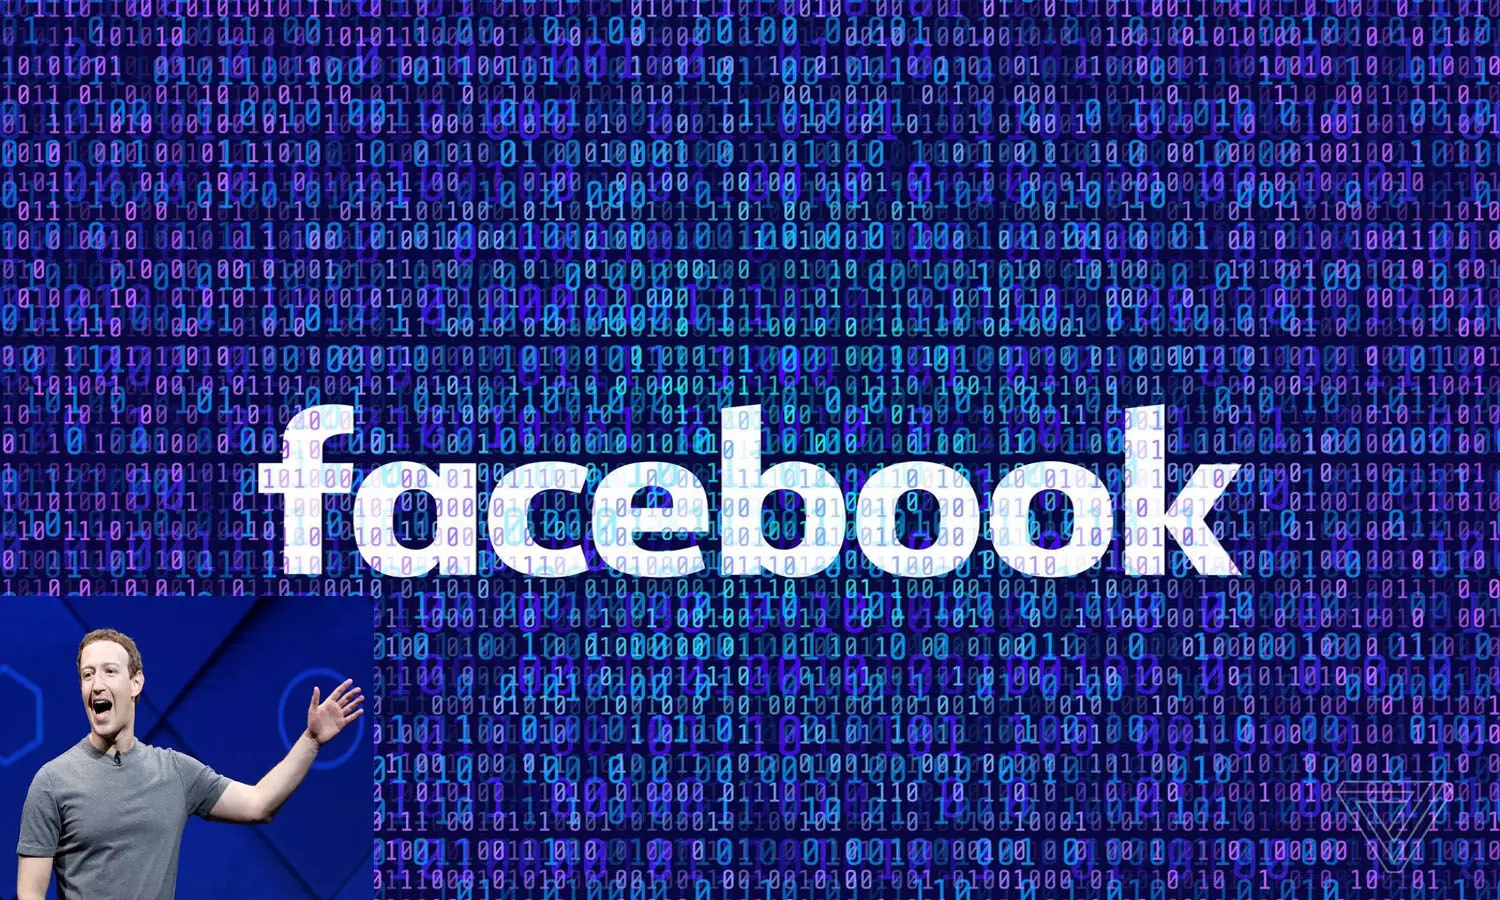 Facebook Ka New Name: फेसबुक हुआ मेटा, नई सुबह बदल गया नाम, क्यों बदलना पड़ा कंपनी का नाम जानें यहां